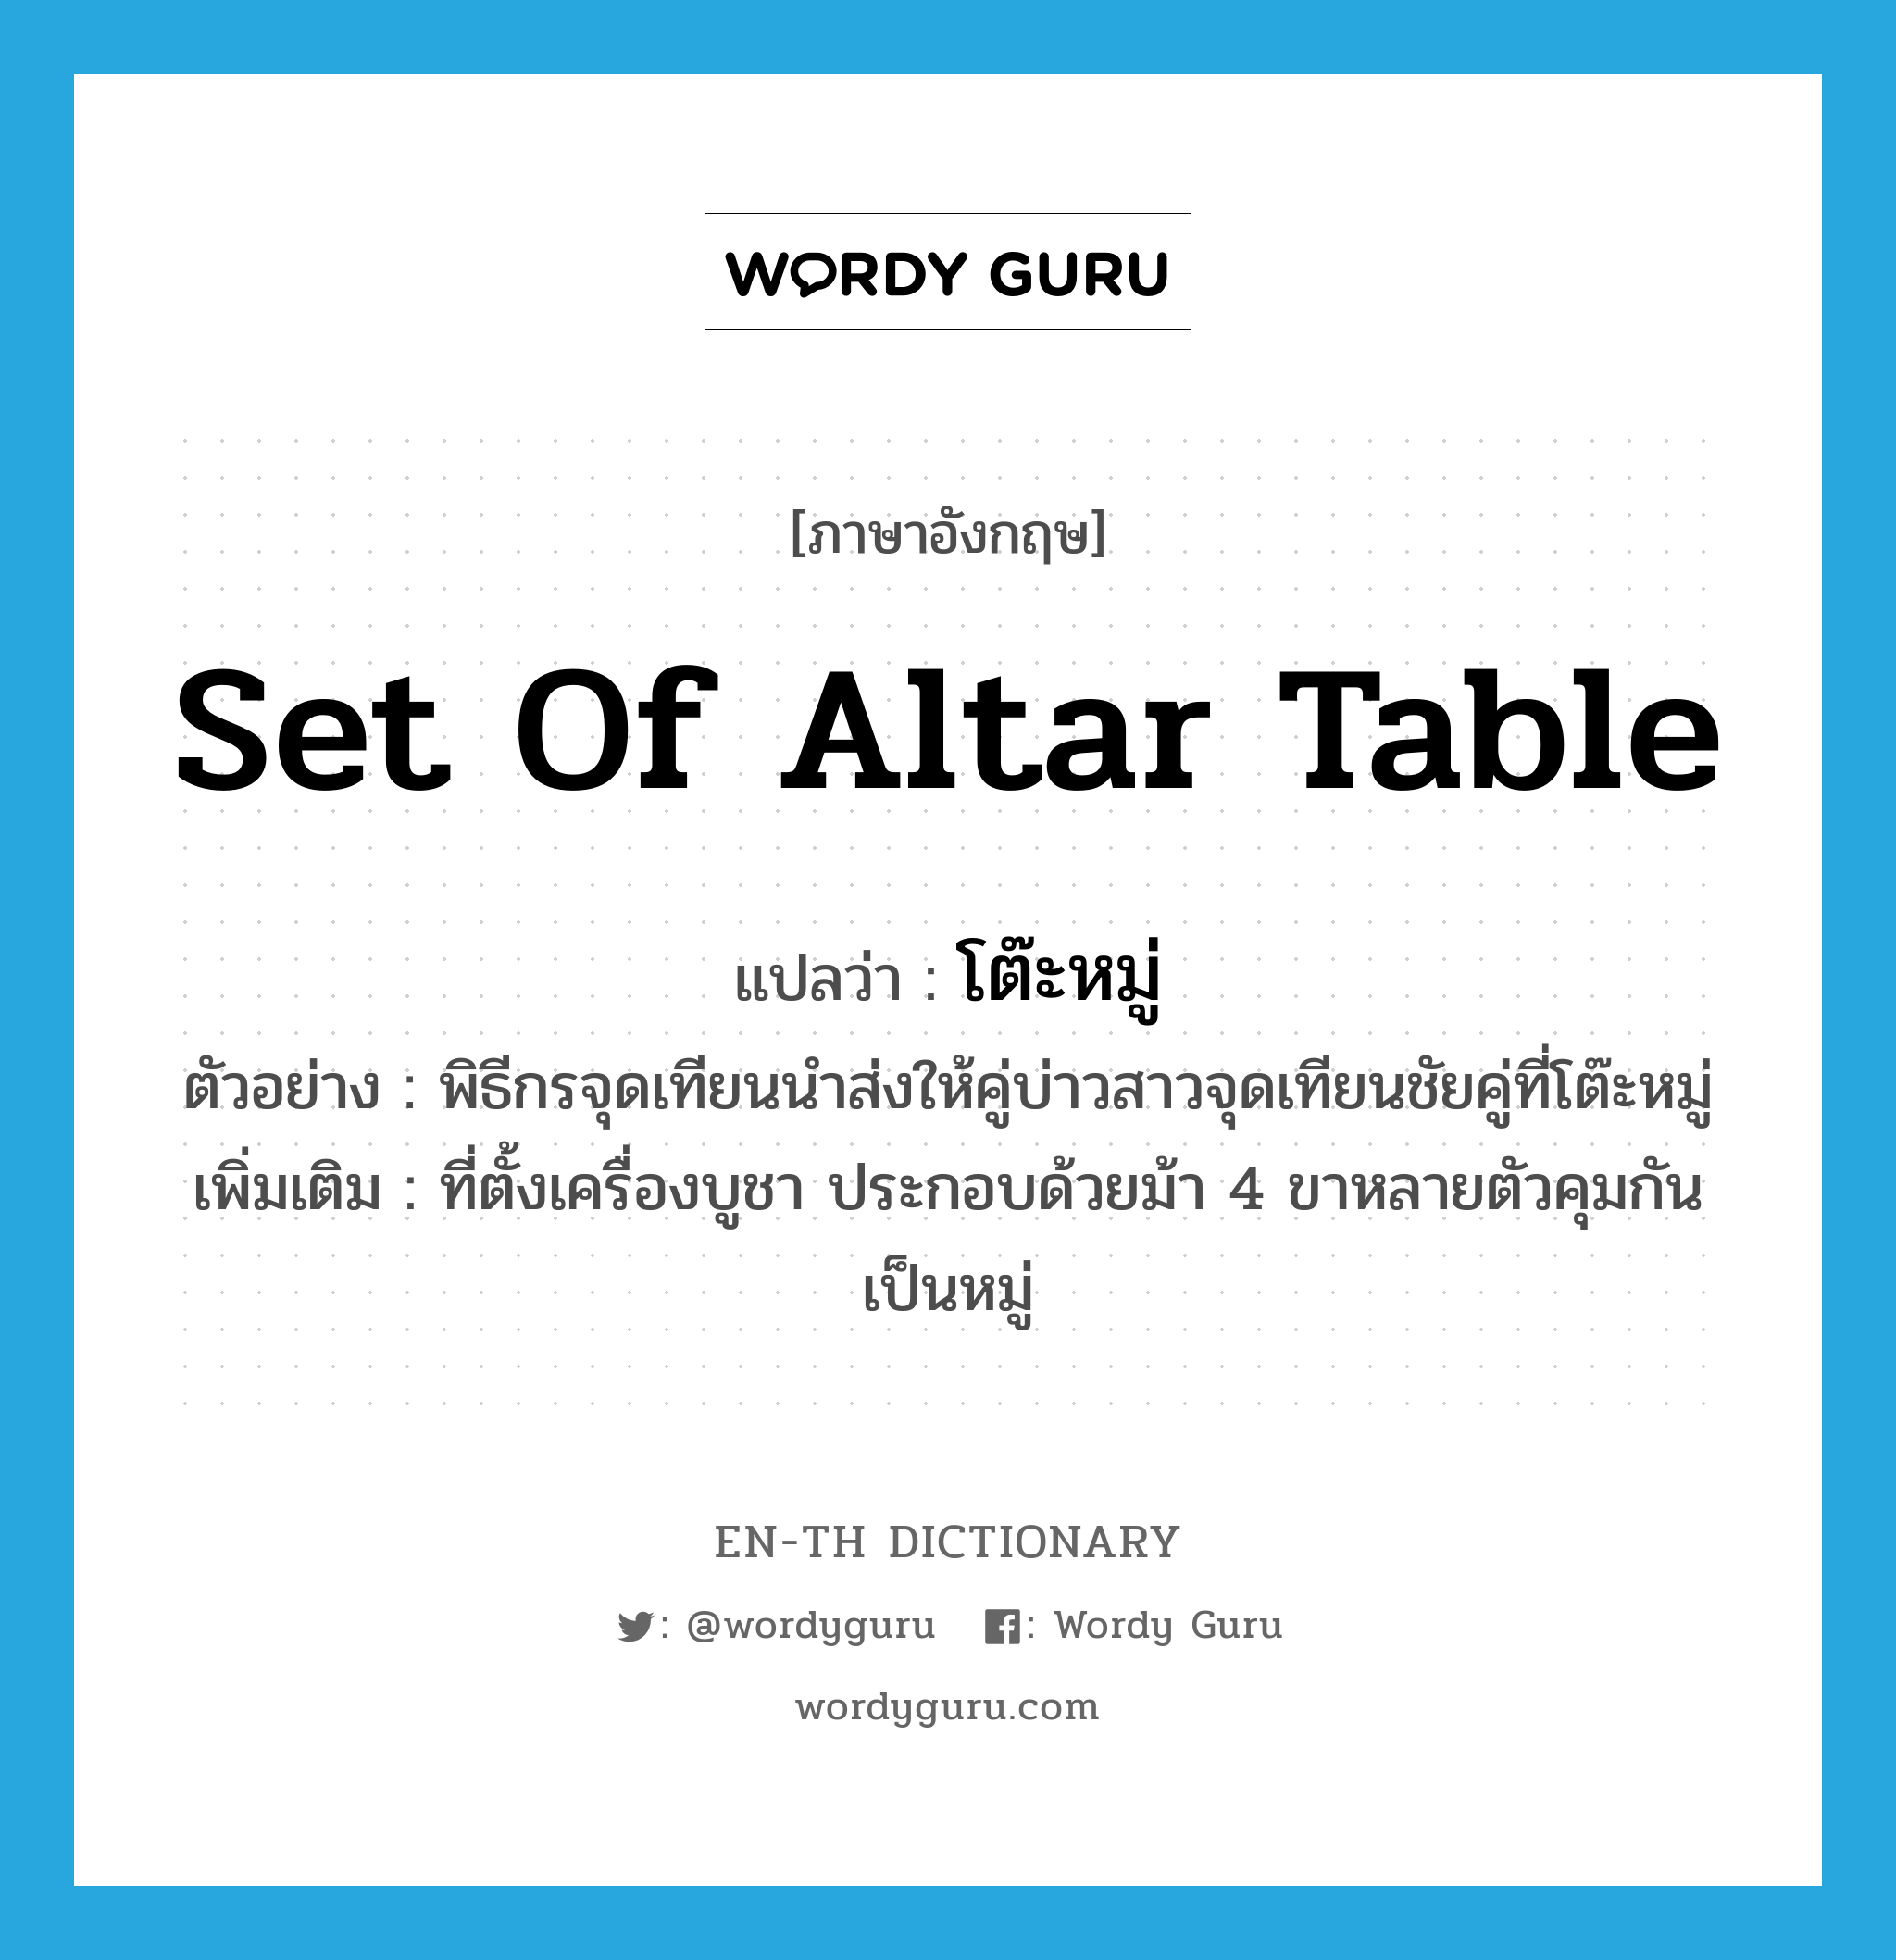 set of altar table แปลว่า?, คำศัพท์ภาษาอังกฤษ set of altar table แปลว่า โต๊ะหมู่ ประเภท N ตัวอย่าง พิธีกรจุดเทียนนำส่งให้คู่บ่าวสาวจุดเทียนชัยคู่ที่โต๊ะหมู่ เพิ่มเติม ที่ตั้งเครื่องบูชา ประกอบด้วยม้า 4 ขาหลายตัวคุมกันเป็นหมู่ หมวด N